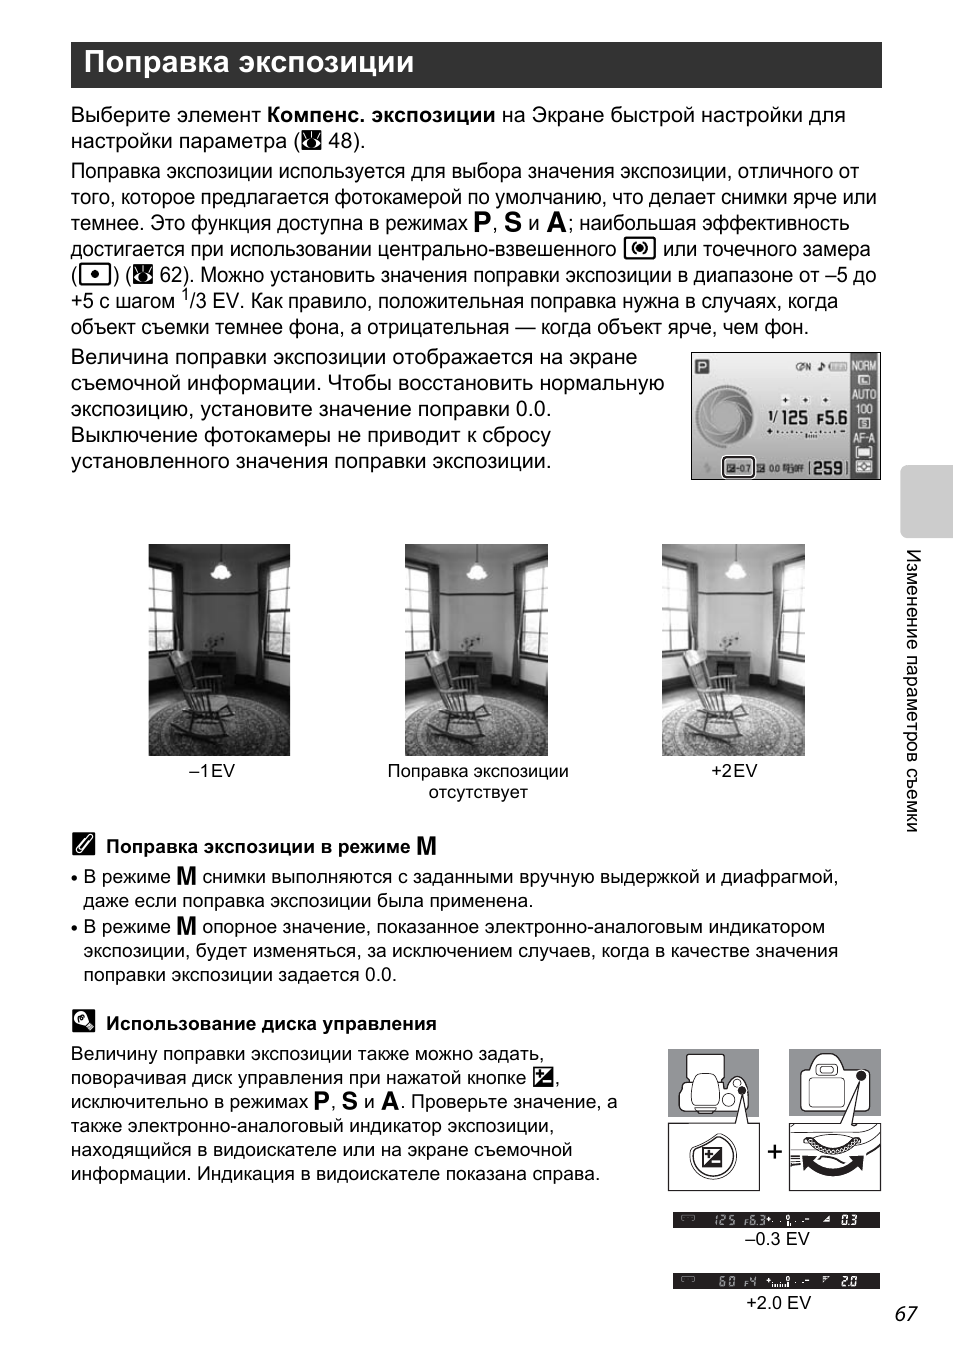 Поправка экспозиции, A 67) | Инструкция по эксплуатации Nikon D60 | Страница 79 / 204